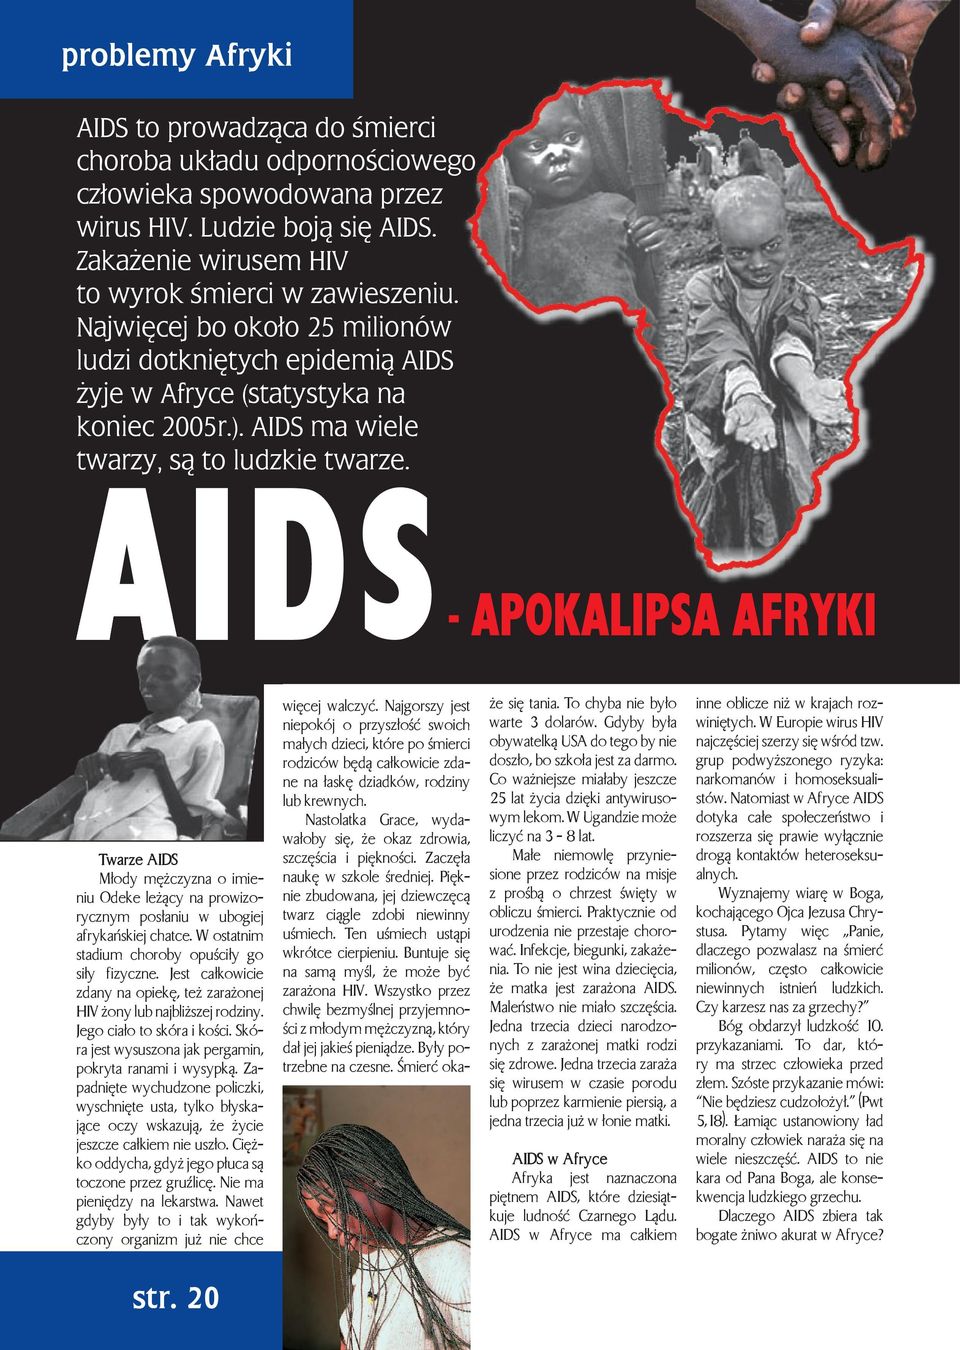 AIDS - APOKALIPSA AFRYKI Twarze AIDS Młody mężczyzna o imieniu Odeke leżący na prowizorycznym posłaniu w ubogiej afrykańskiej chatce. W ostatnim stadium choroby opuściły go siły fizyczne.